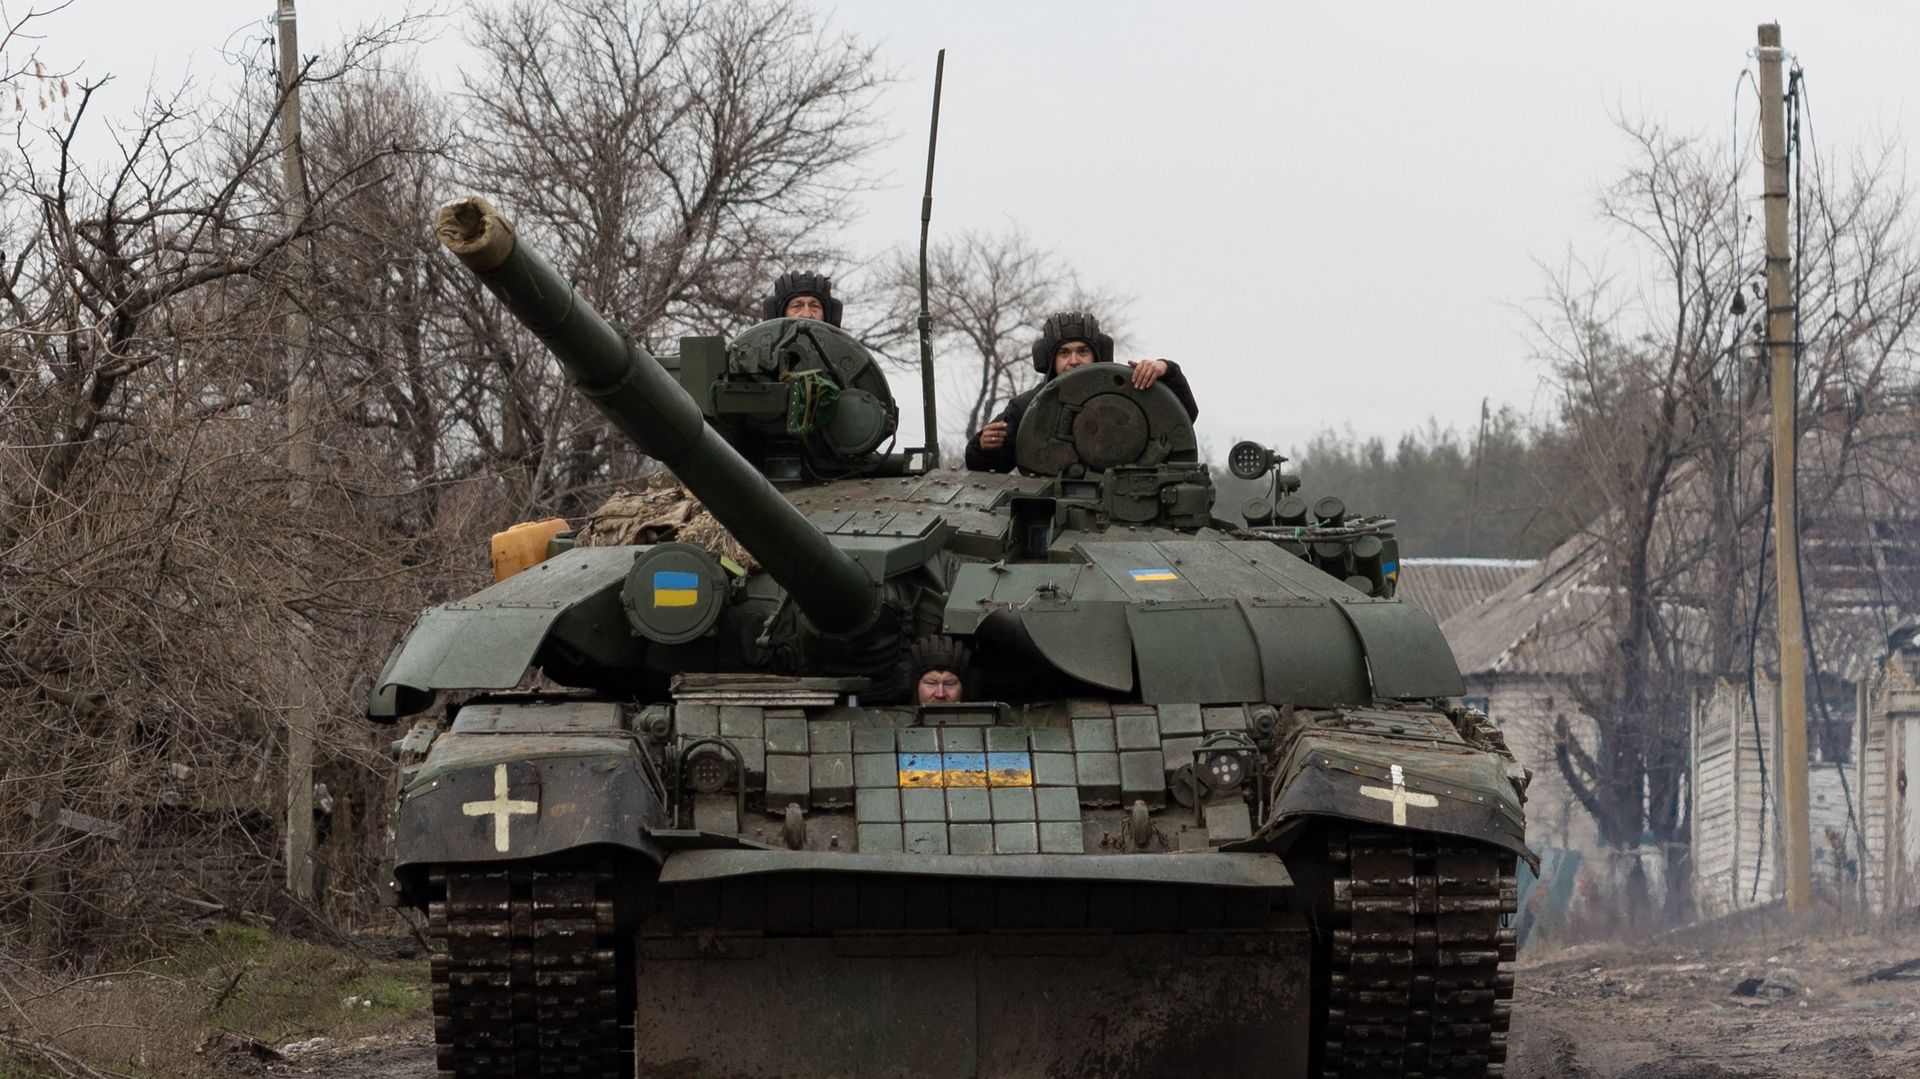 Des militaires ukrainiens montent sur un char d’assaut dans un lieu non divulgué de l’est de l’Ukraine, le 29 décembre 2022, en pleine invasion de l’Ukraine par la Russie.
